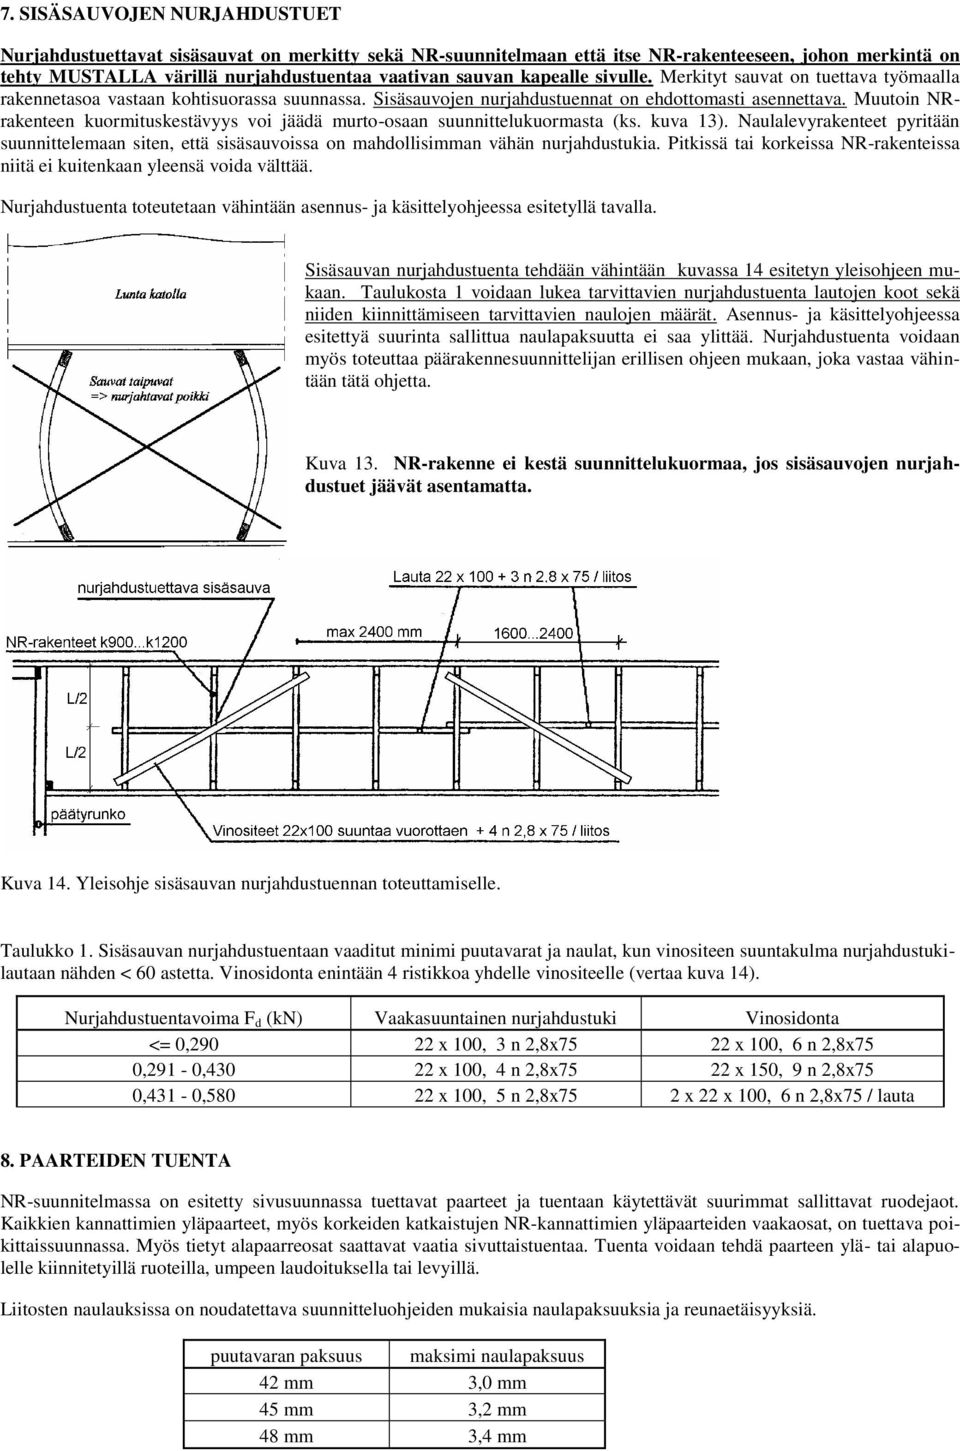 Muutoin NRrakenteen kuormituskestävyys voi jäädä murto-osaan suunnittelukuormasta (ks. kuva 13).